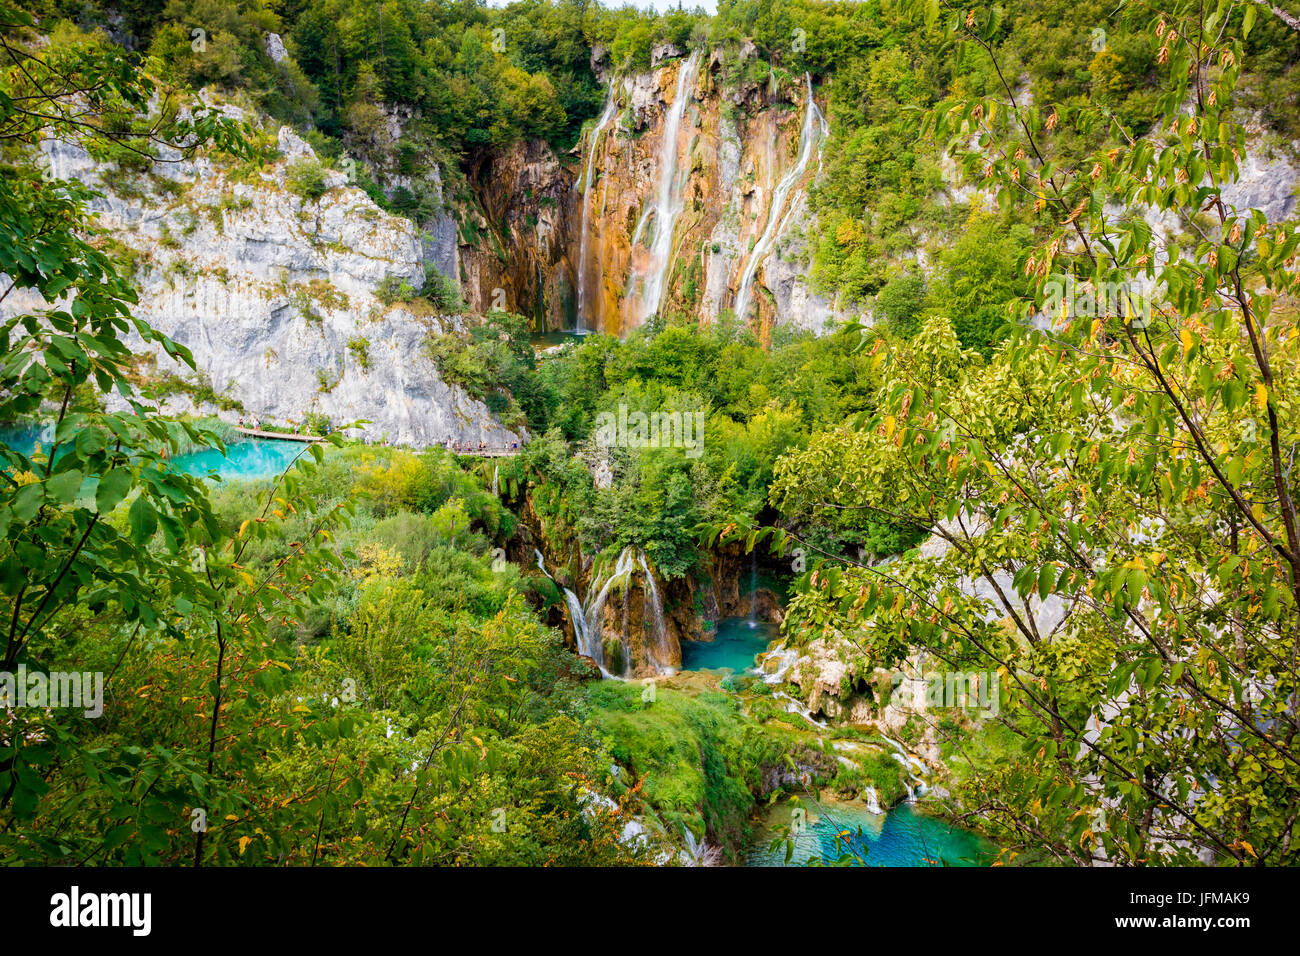 Les lacs de Plitvice, Croatie, Europe, étangs et chutes dans le vert de la végétation Banque D'Images